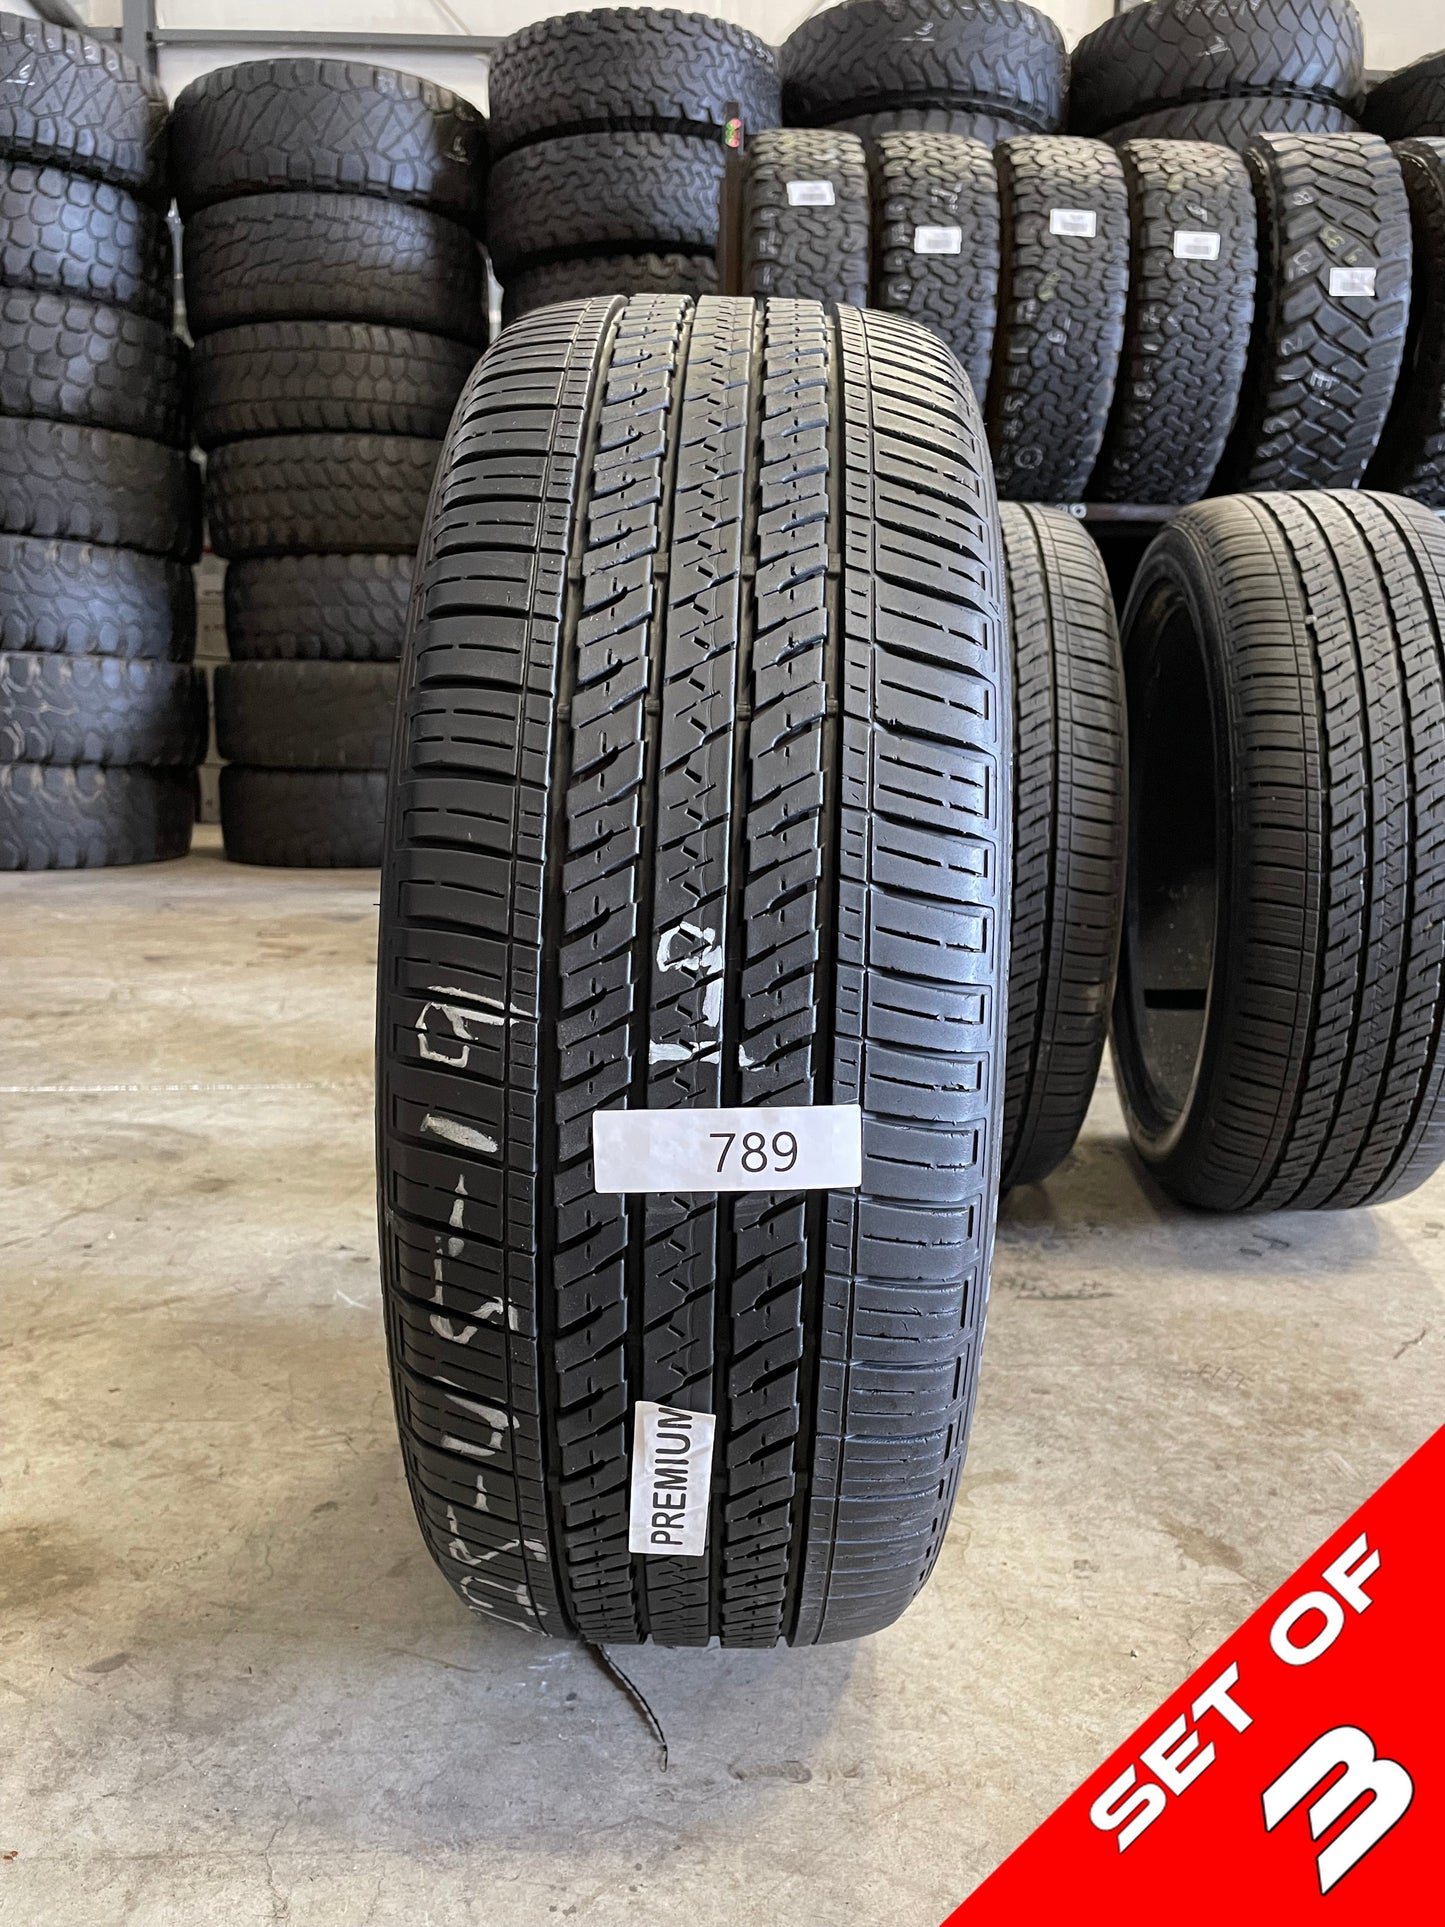 SET OF 3 225/45R19 Bridgestone Ecopia H/L 422 Plus 92 W SL - Premium Used Tires